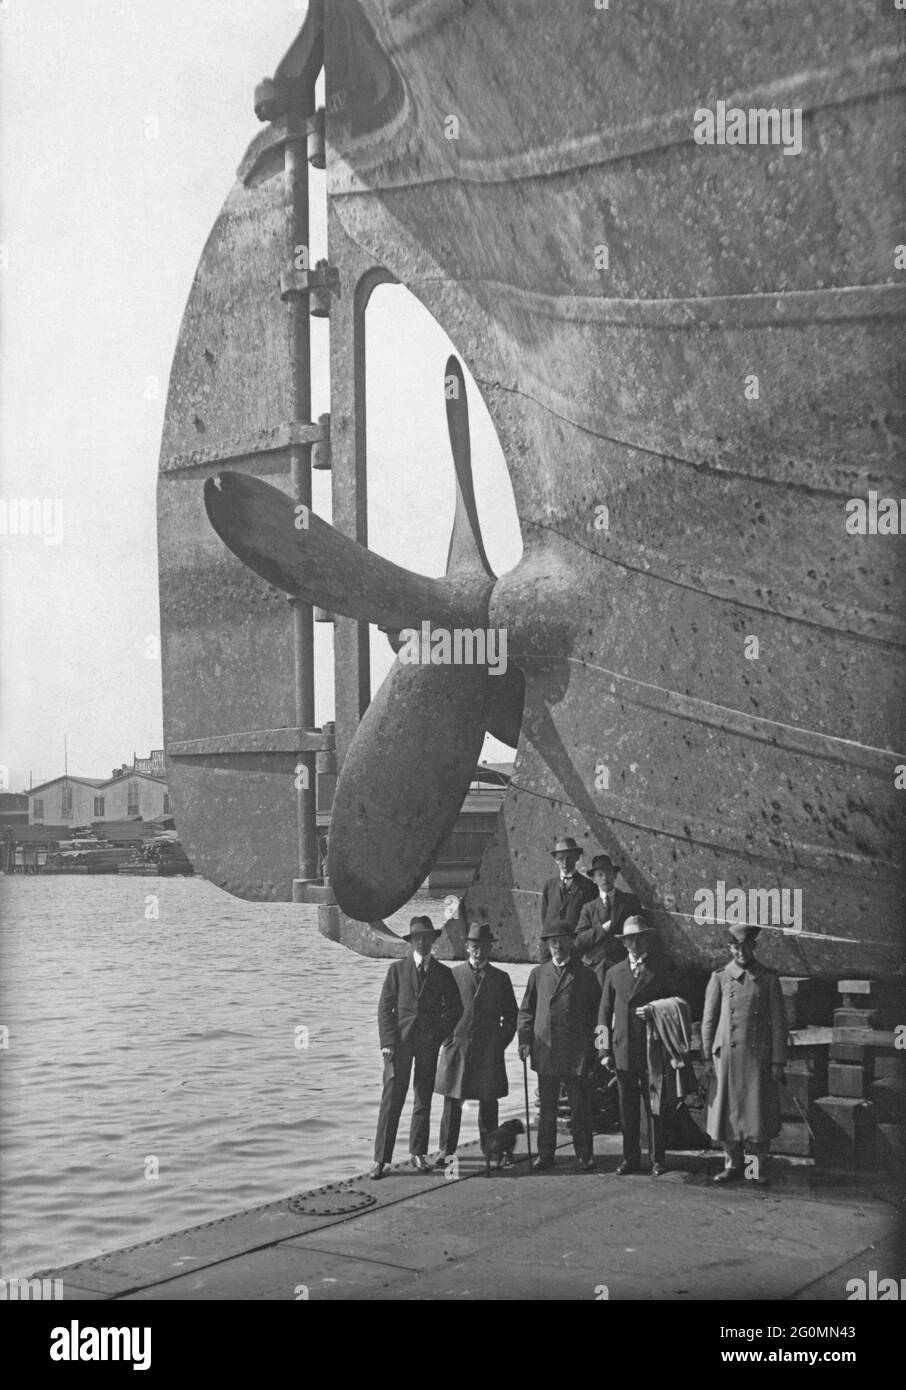 Dockyard in den 1920er Jahren. Ein Schiff wird gewartet und das Schiff wird in einem Trockendock angestiegen. Einer der Hecks des Propellers ist sichtbar und seine Größe kann gemessen werden, indem man ihn mit den Menschen vergleicht, die darunter stehen. Foto aufgenommen in der Götaverken Werft in Göteborg Schweden in den 1920er Jahren. Stockfoto